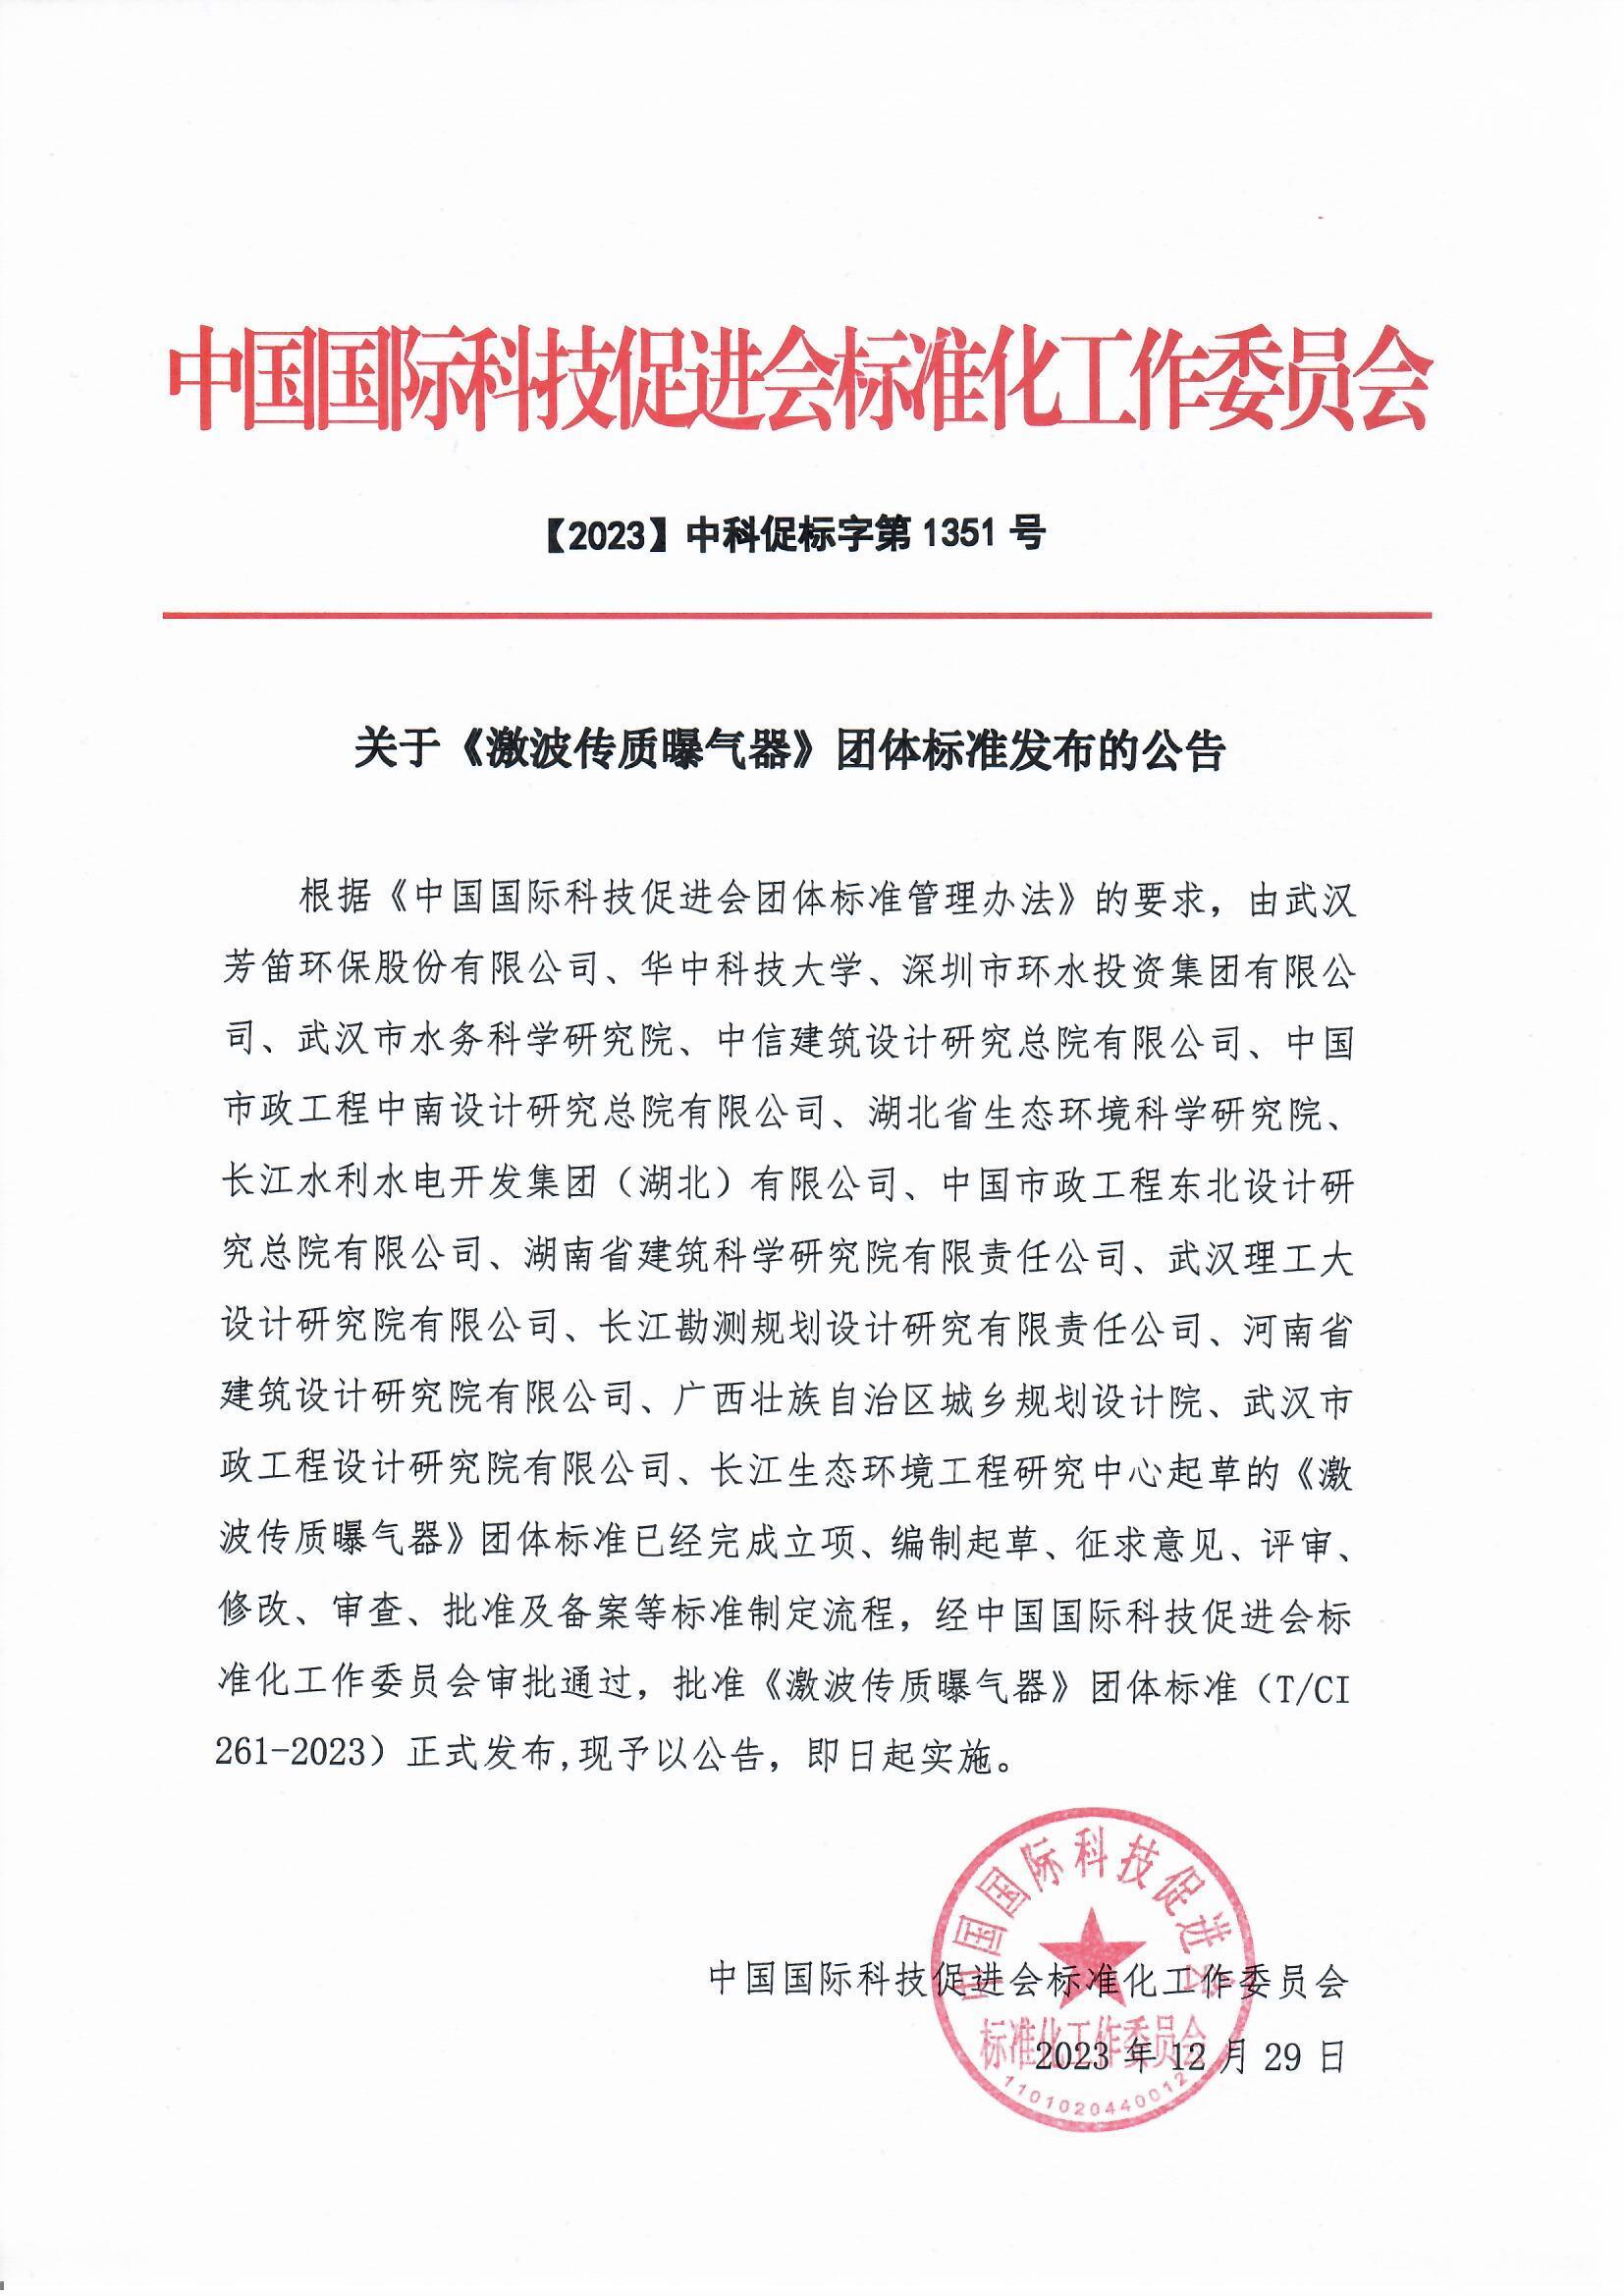 芳笛环保主编的团体标准在中国国际科技促进会批准发布